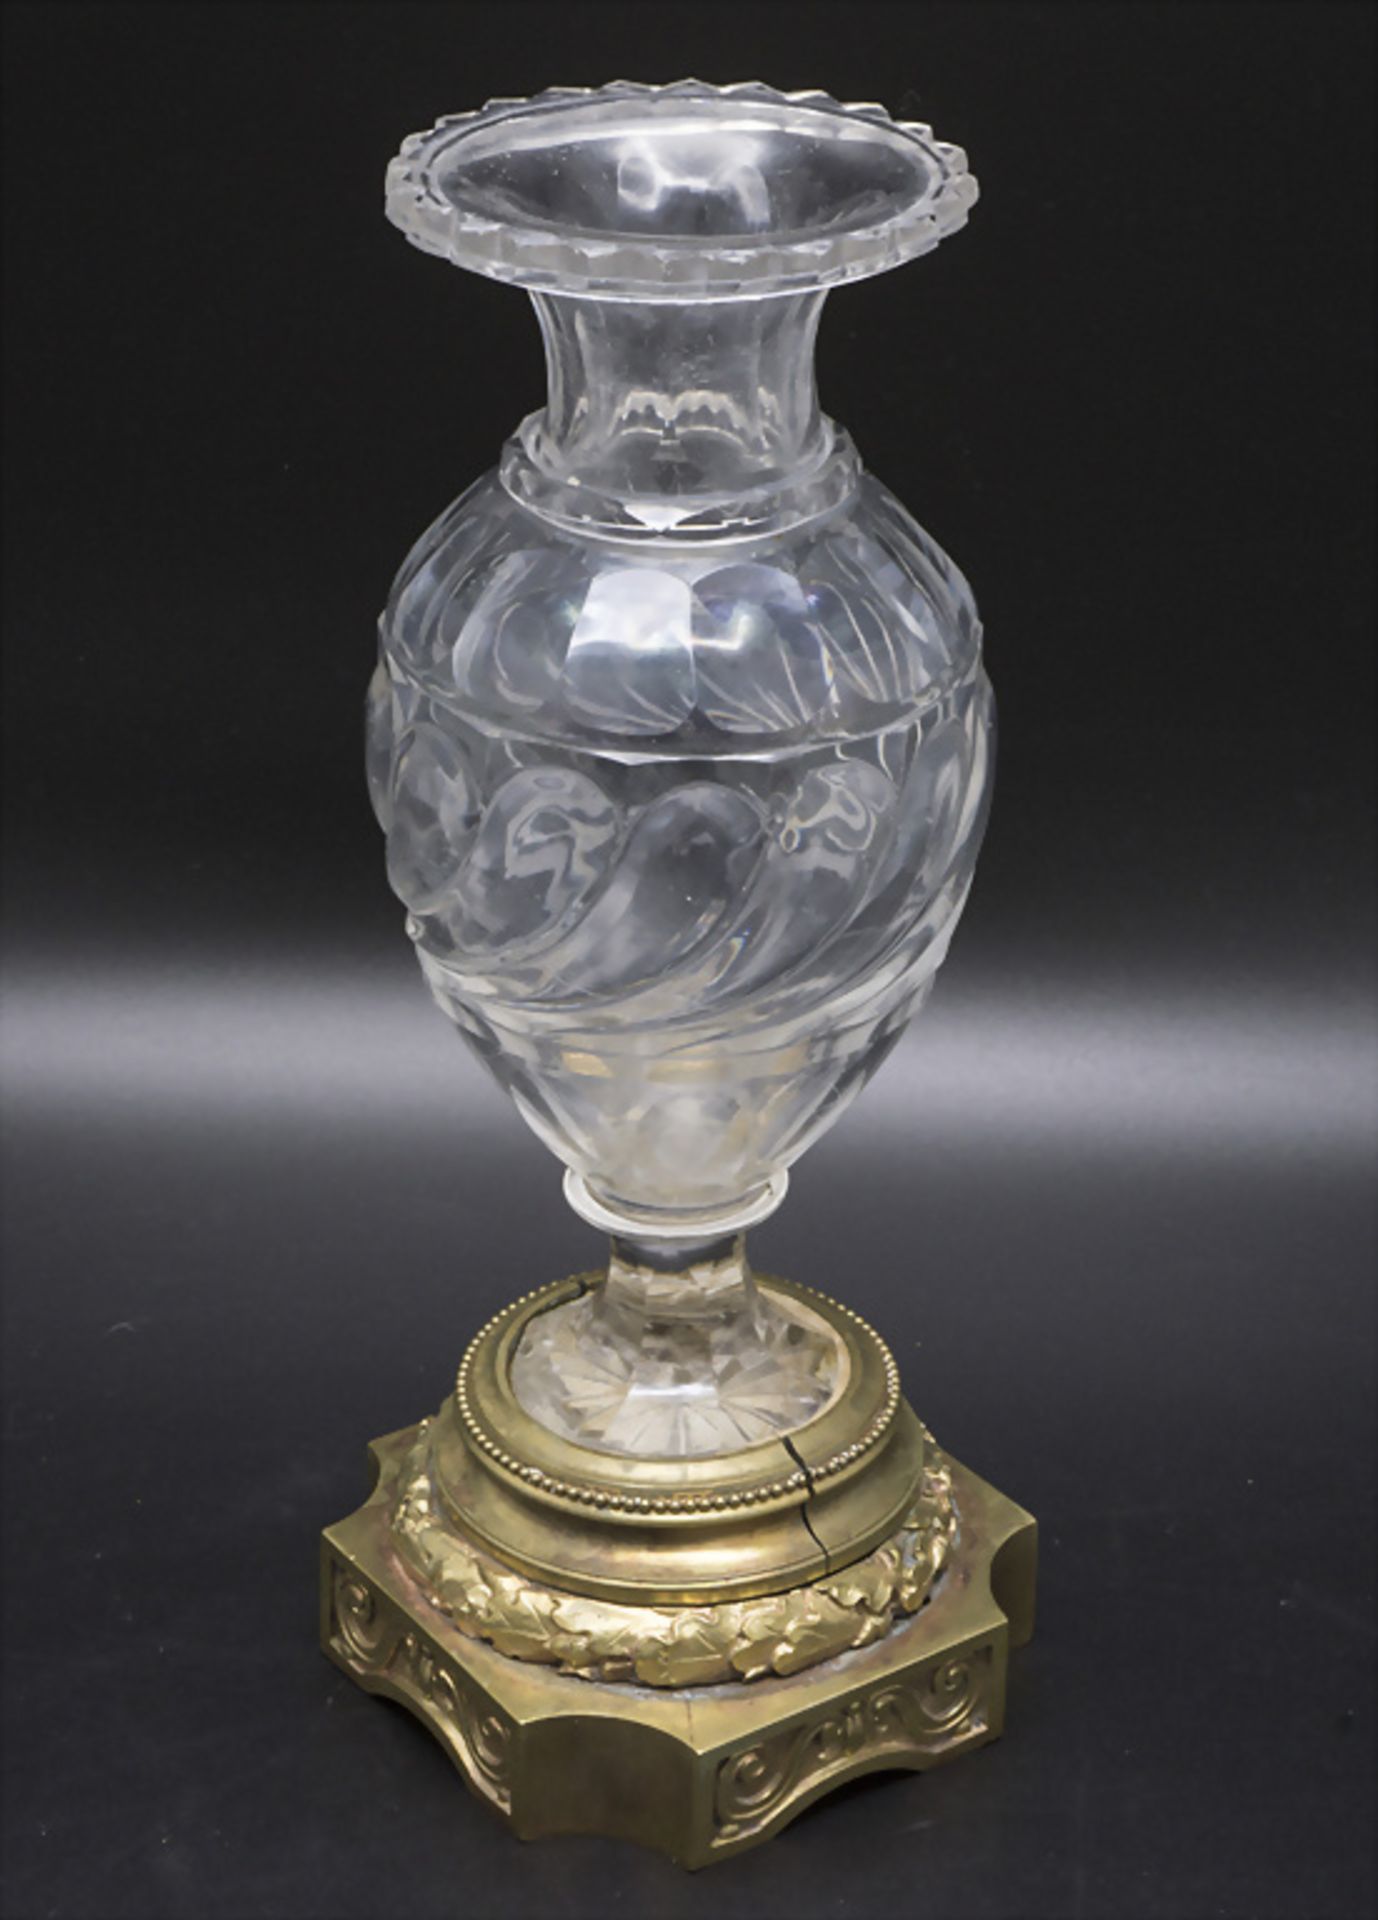 Glasziervase / A decorative glass vase, Frankreich, um 1800